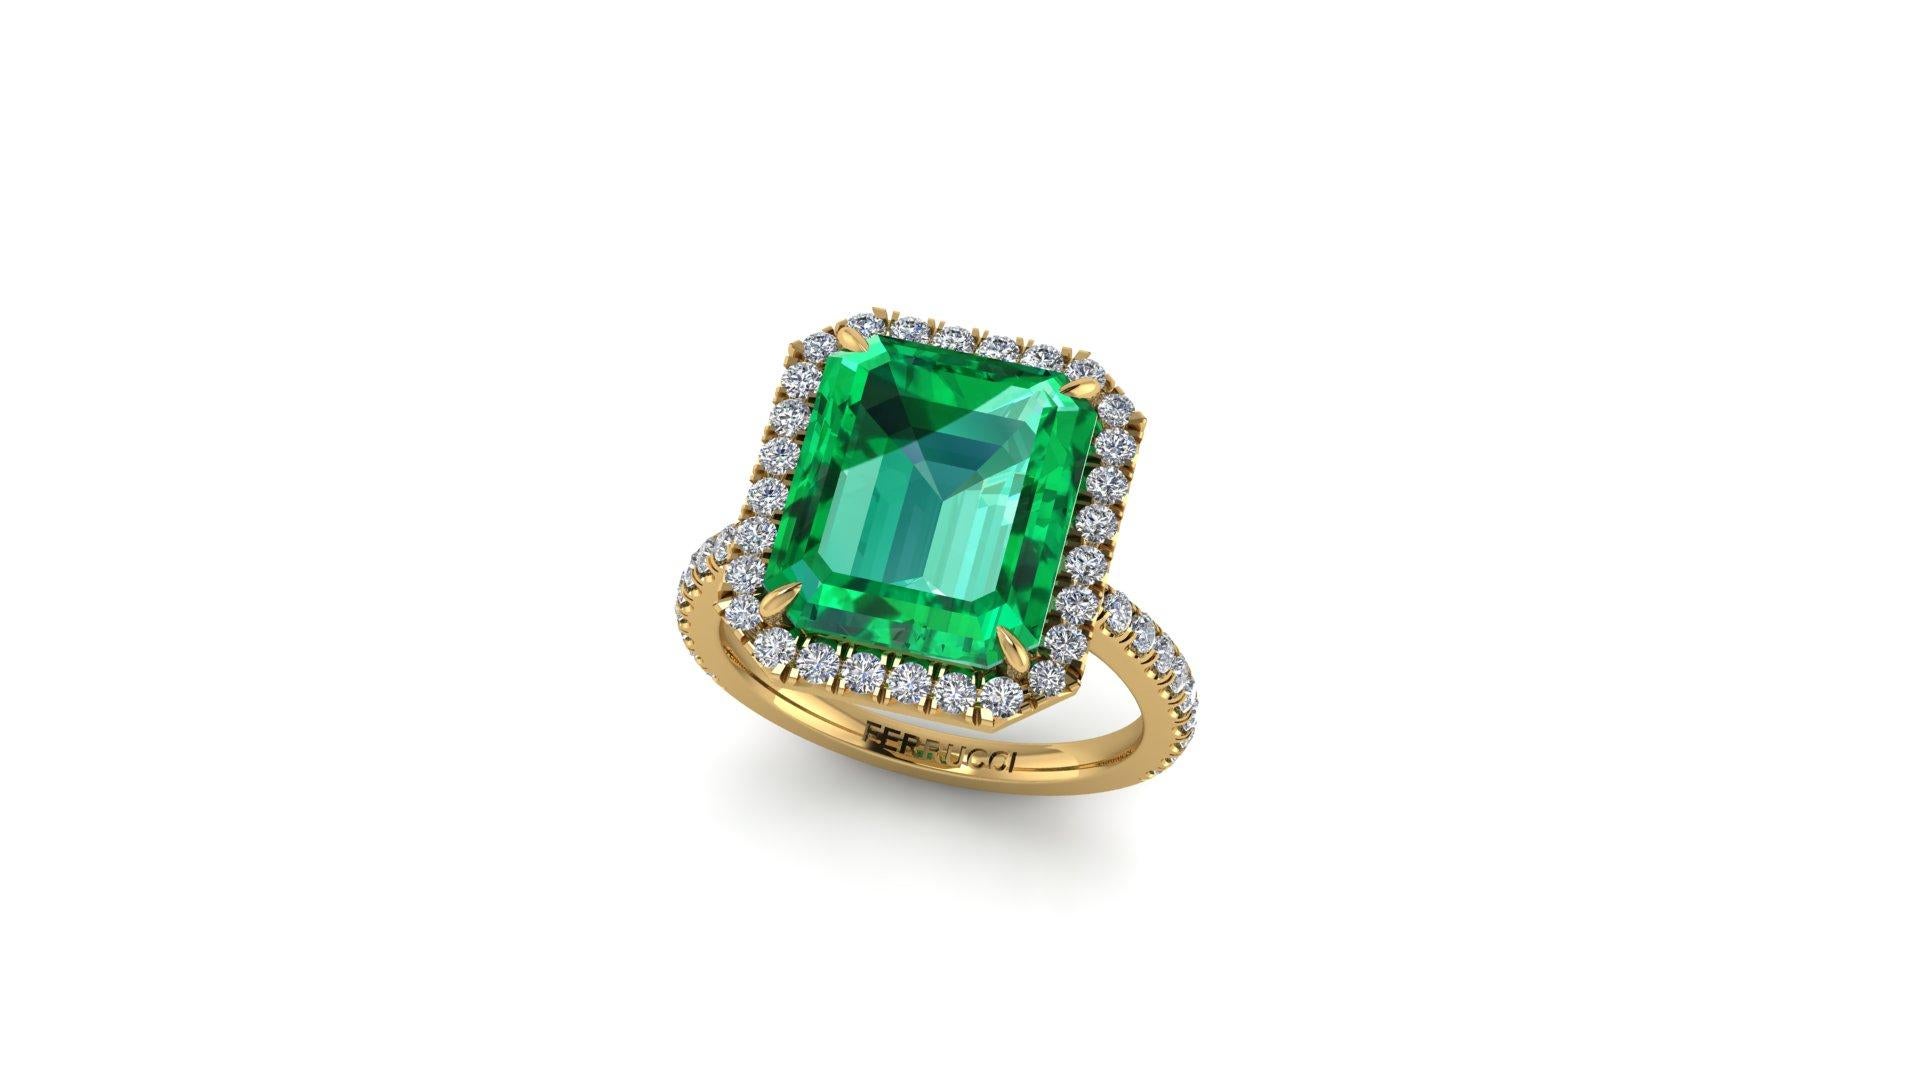 5.75 ct Smaragd, GIA zertifiziert atemberaubend sauberes Mineral, mit nur wenigen natürlichen Einschlüssen typisch für den Smaragd. 
Diamond's Halo und Diamond pave' auf den Schaft gesetzt, für eine ungefähre Gesamtkaratgewicht von 0,65 Karat, G